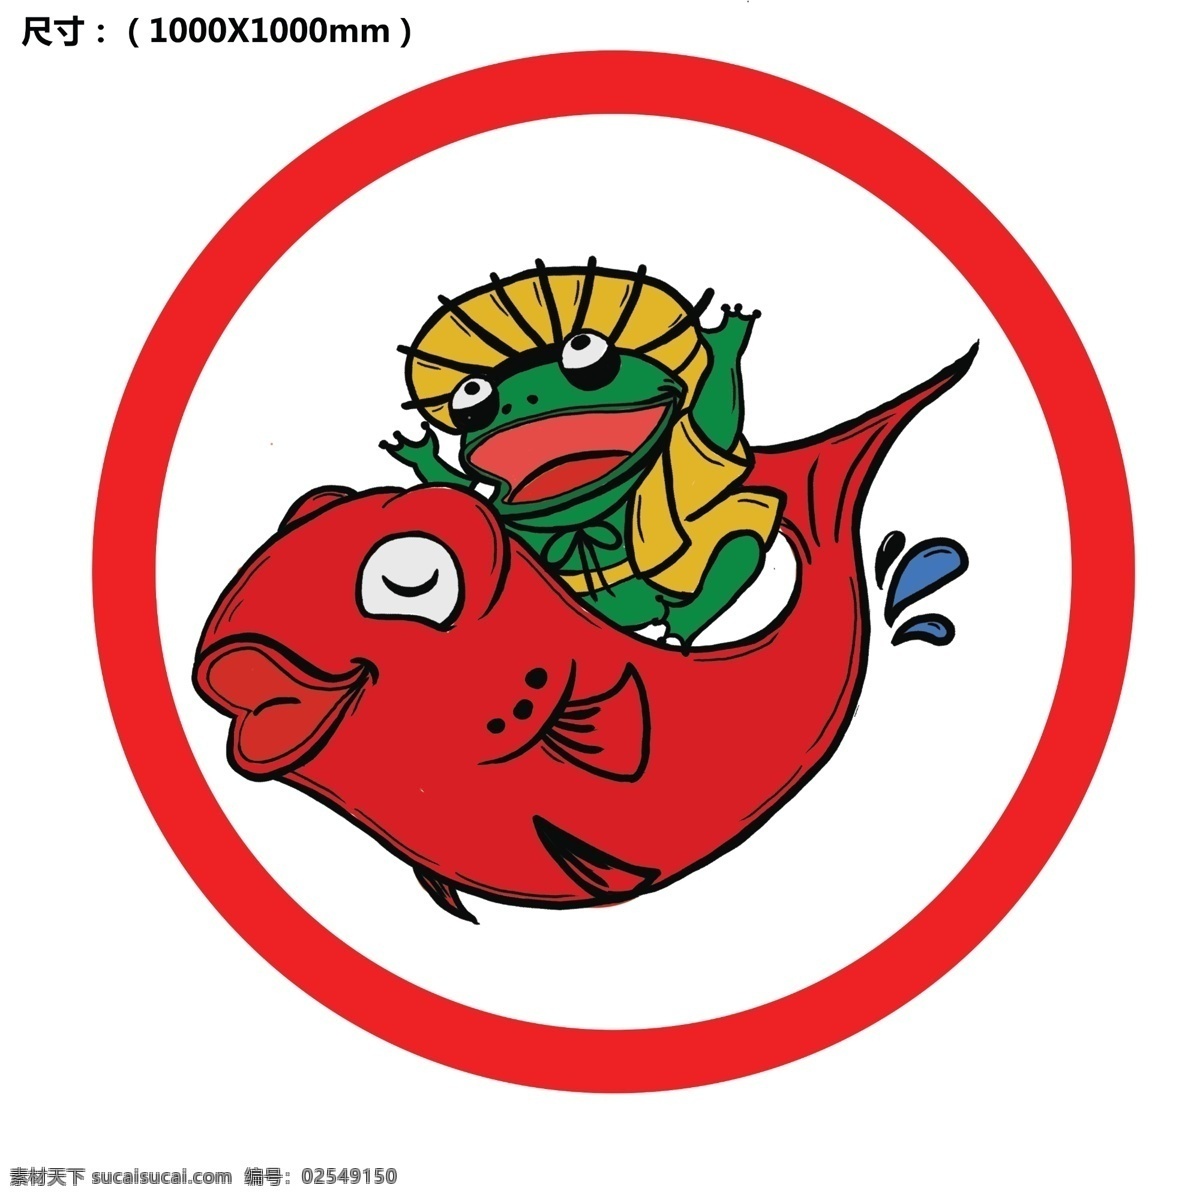 美蛙鱼头 鱼头logo 鱼头 红色鱼 圆形logo